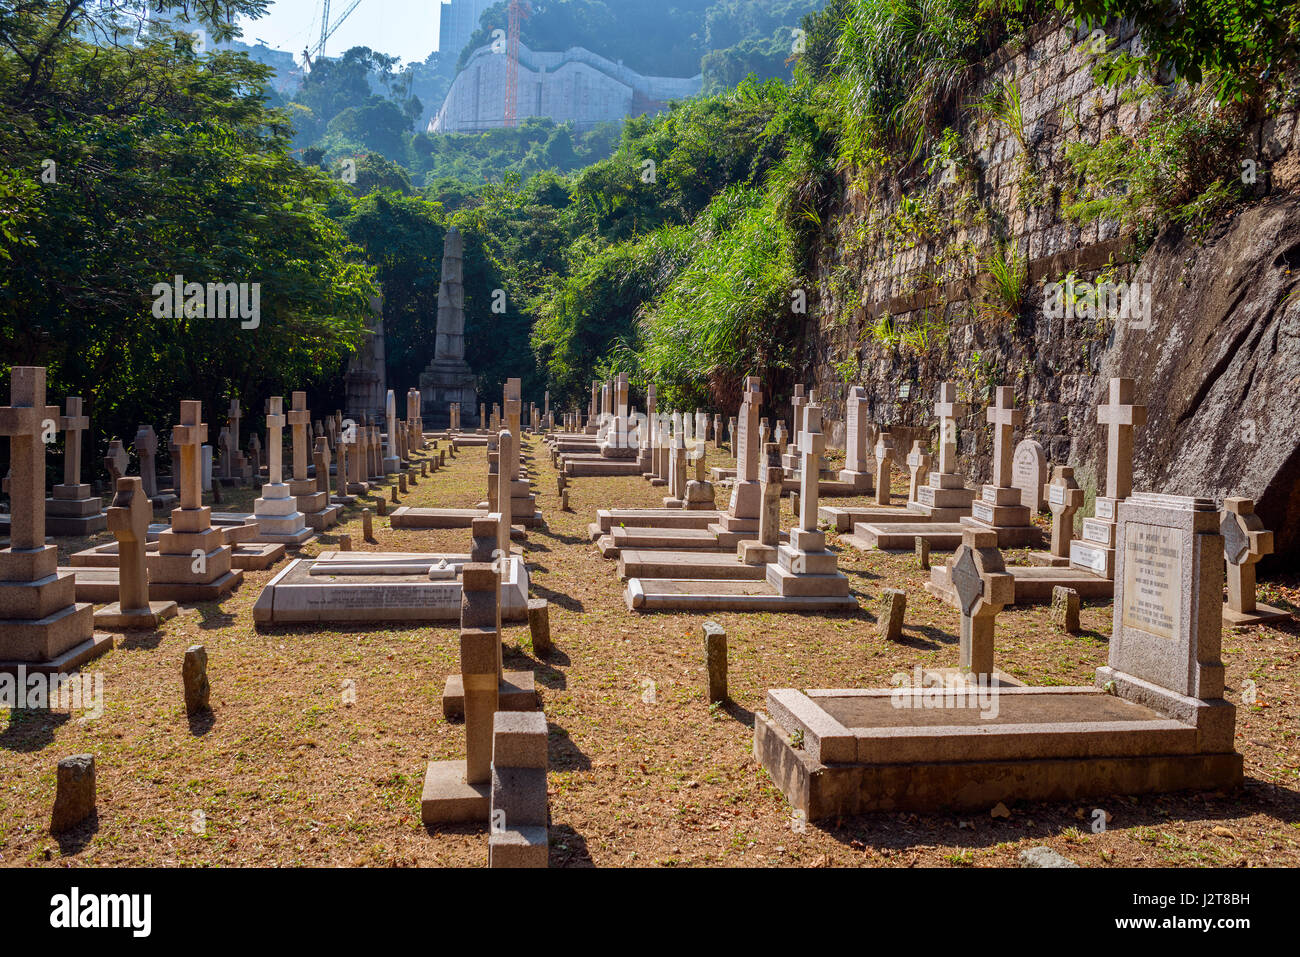 Military Memorials and Graves, Hong Kong Cemetery, Happy Valley, Hong Kong Stock Photo